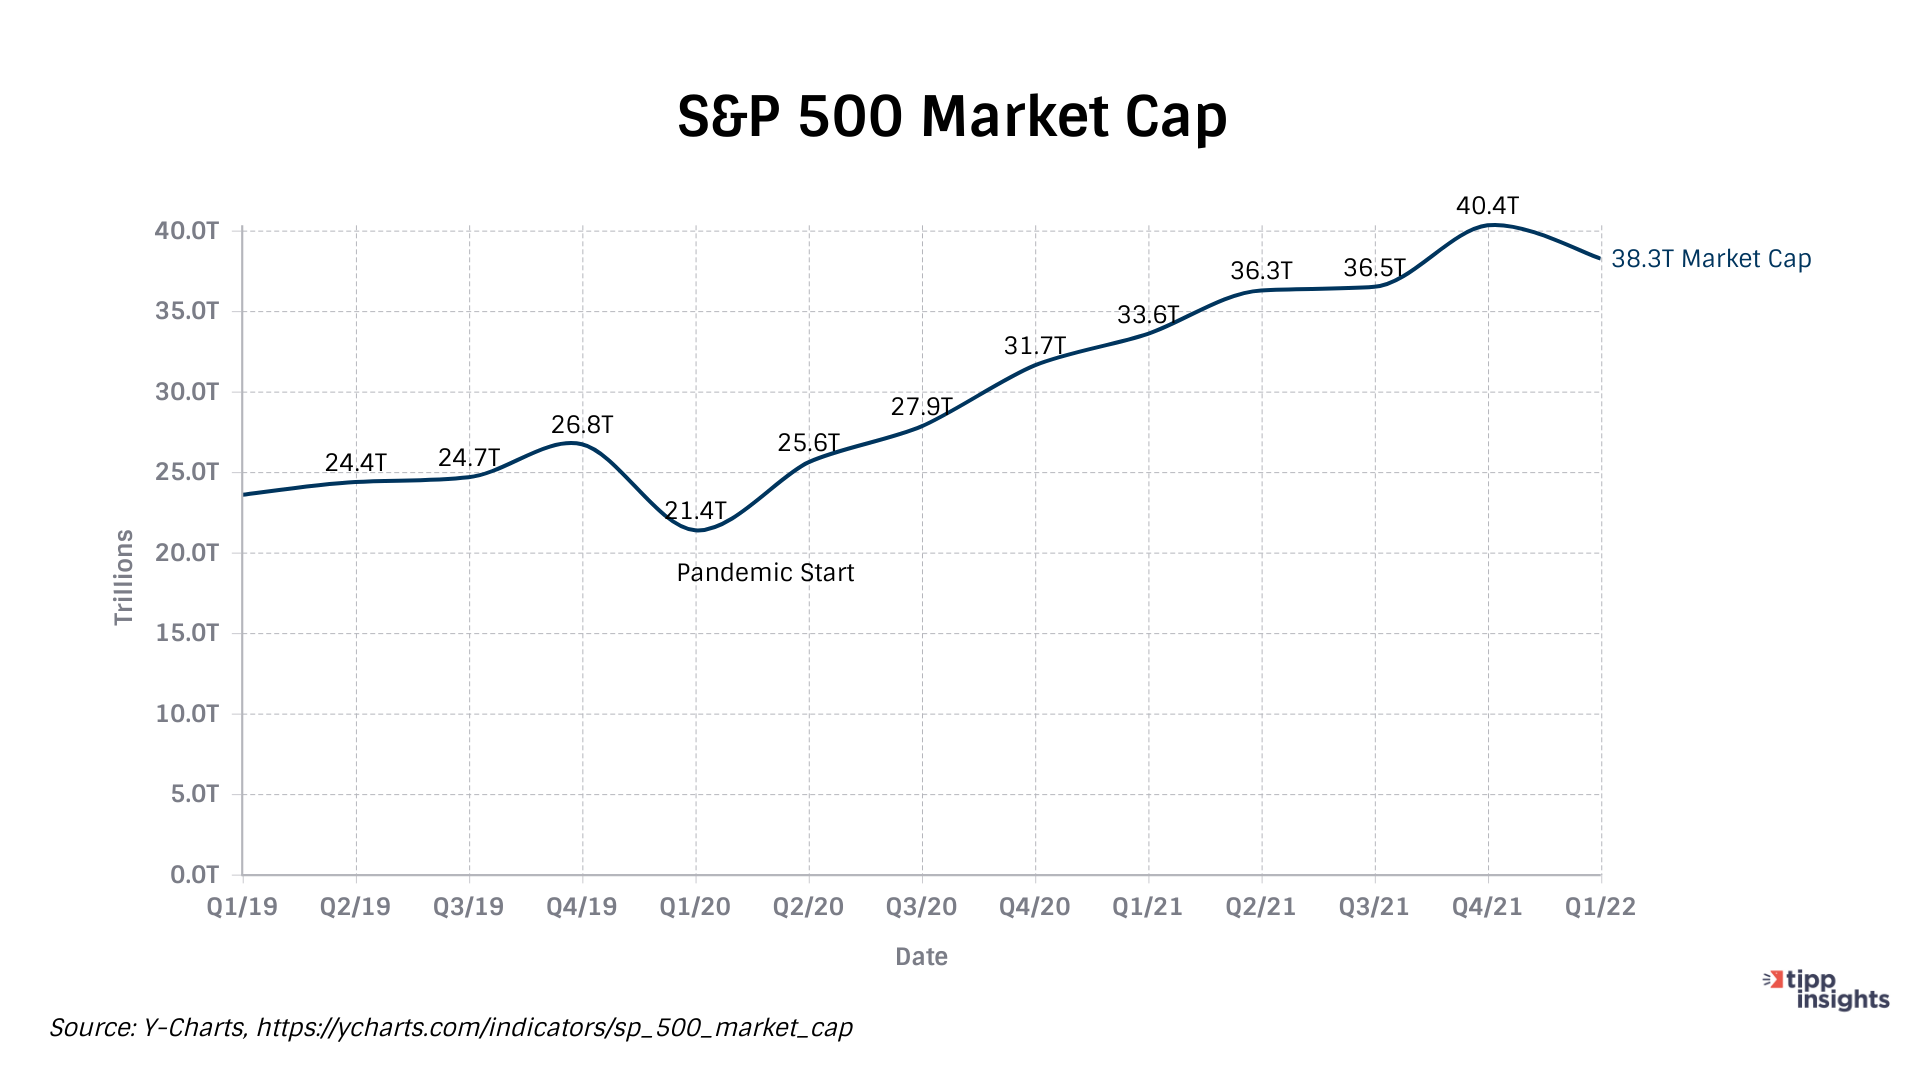 S&P 500 Market Cap Q1/2019 to Q1/2022